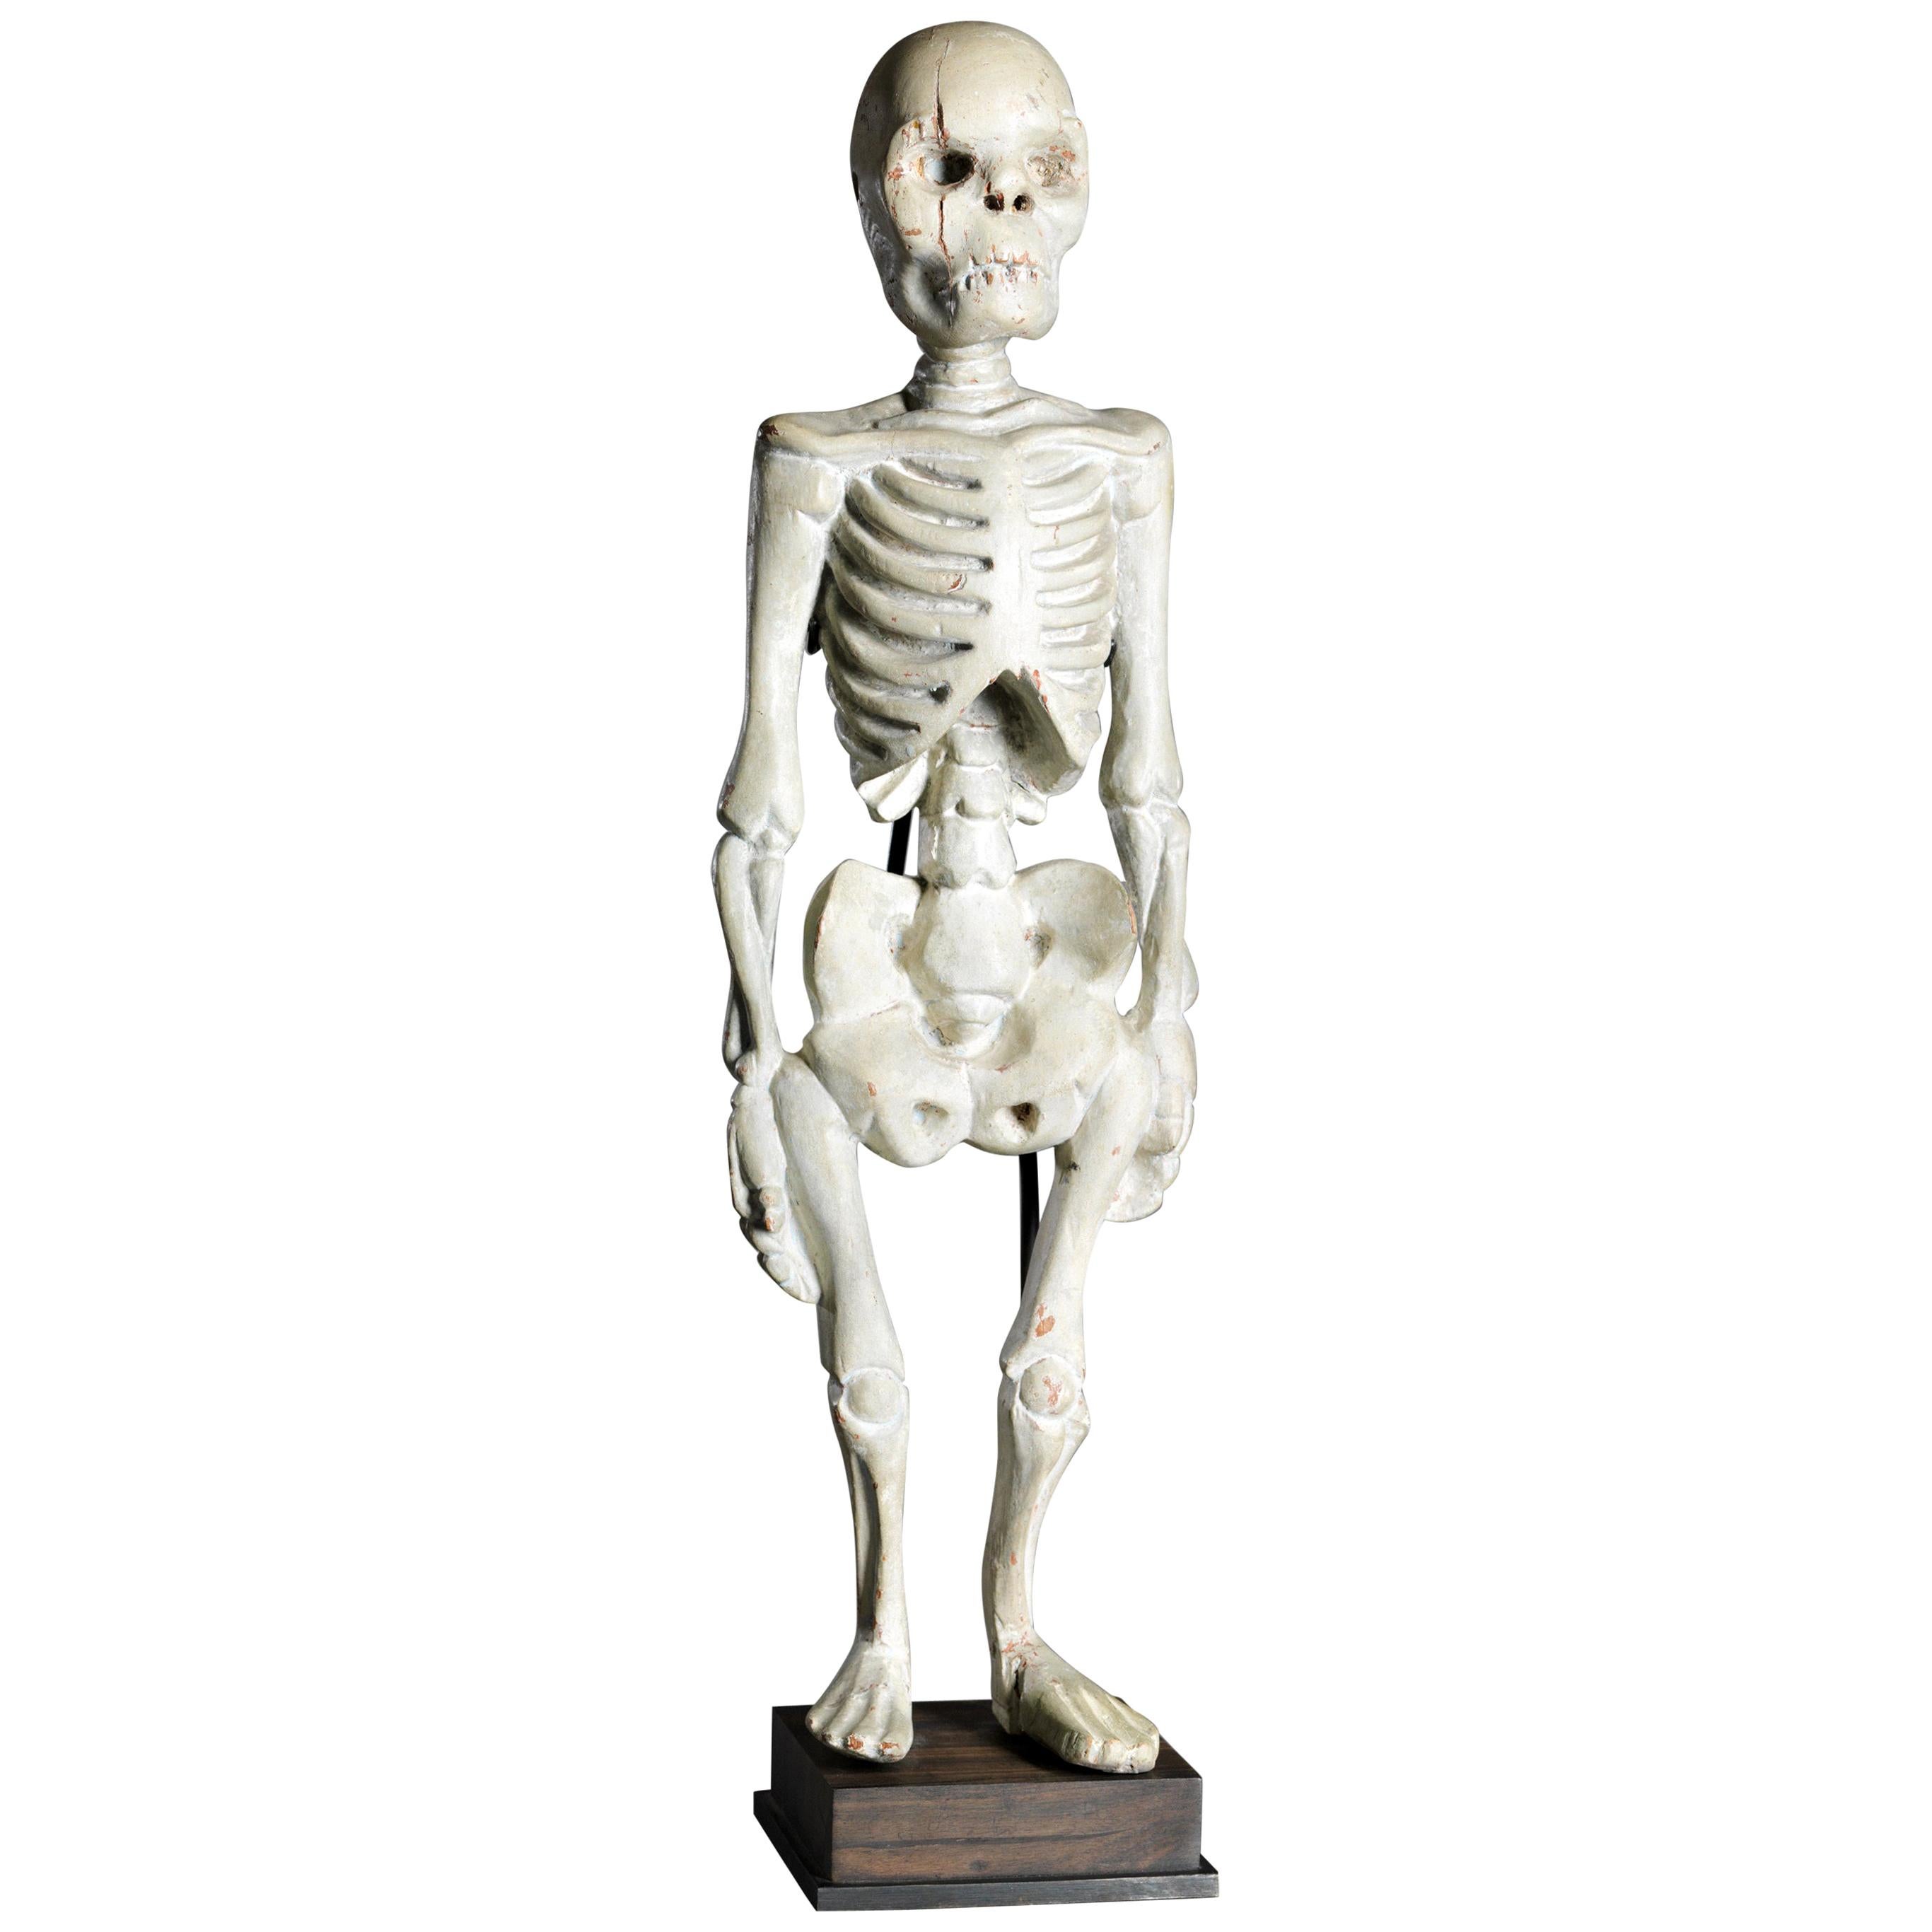 Squelette humain debout sculpté en bois, Asie du Sud-Est